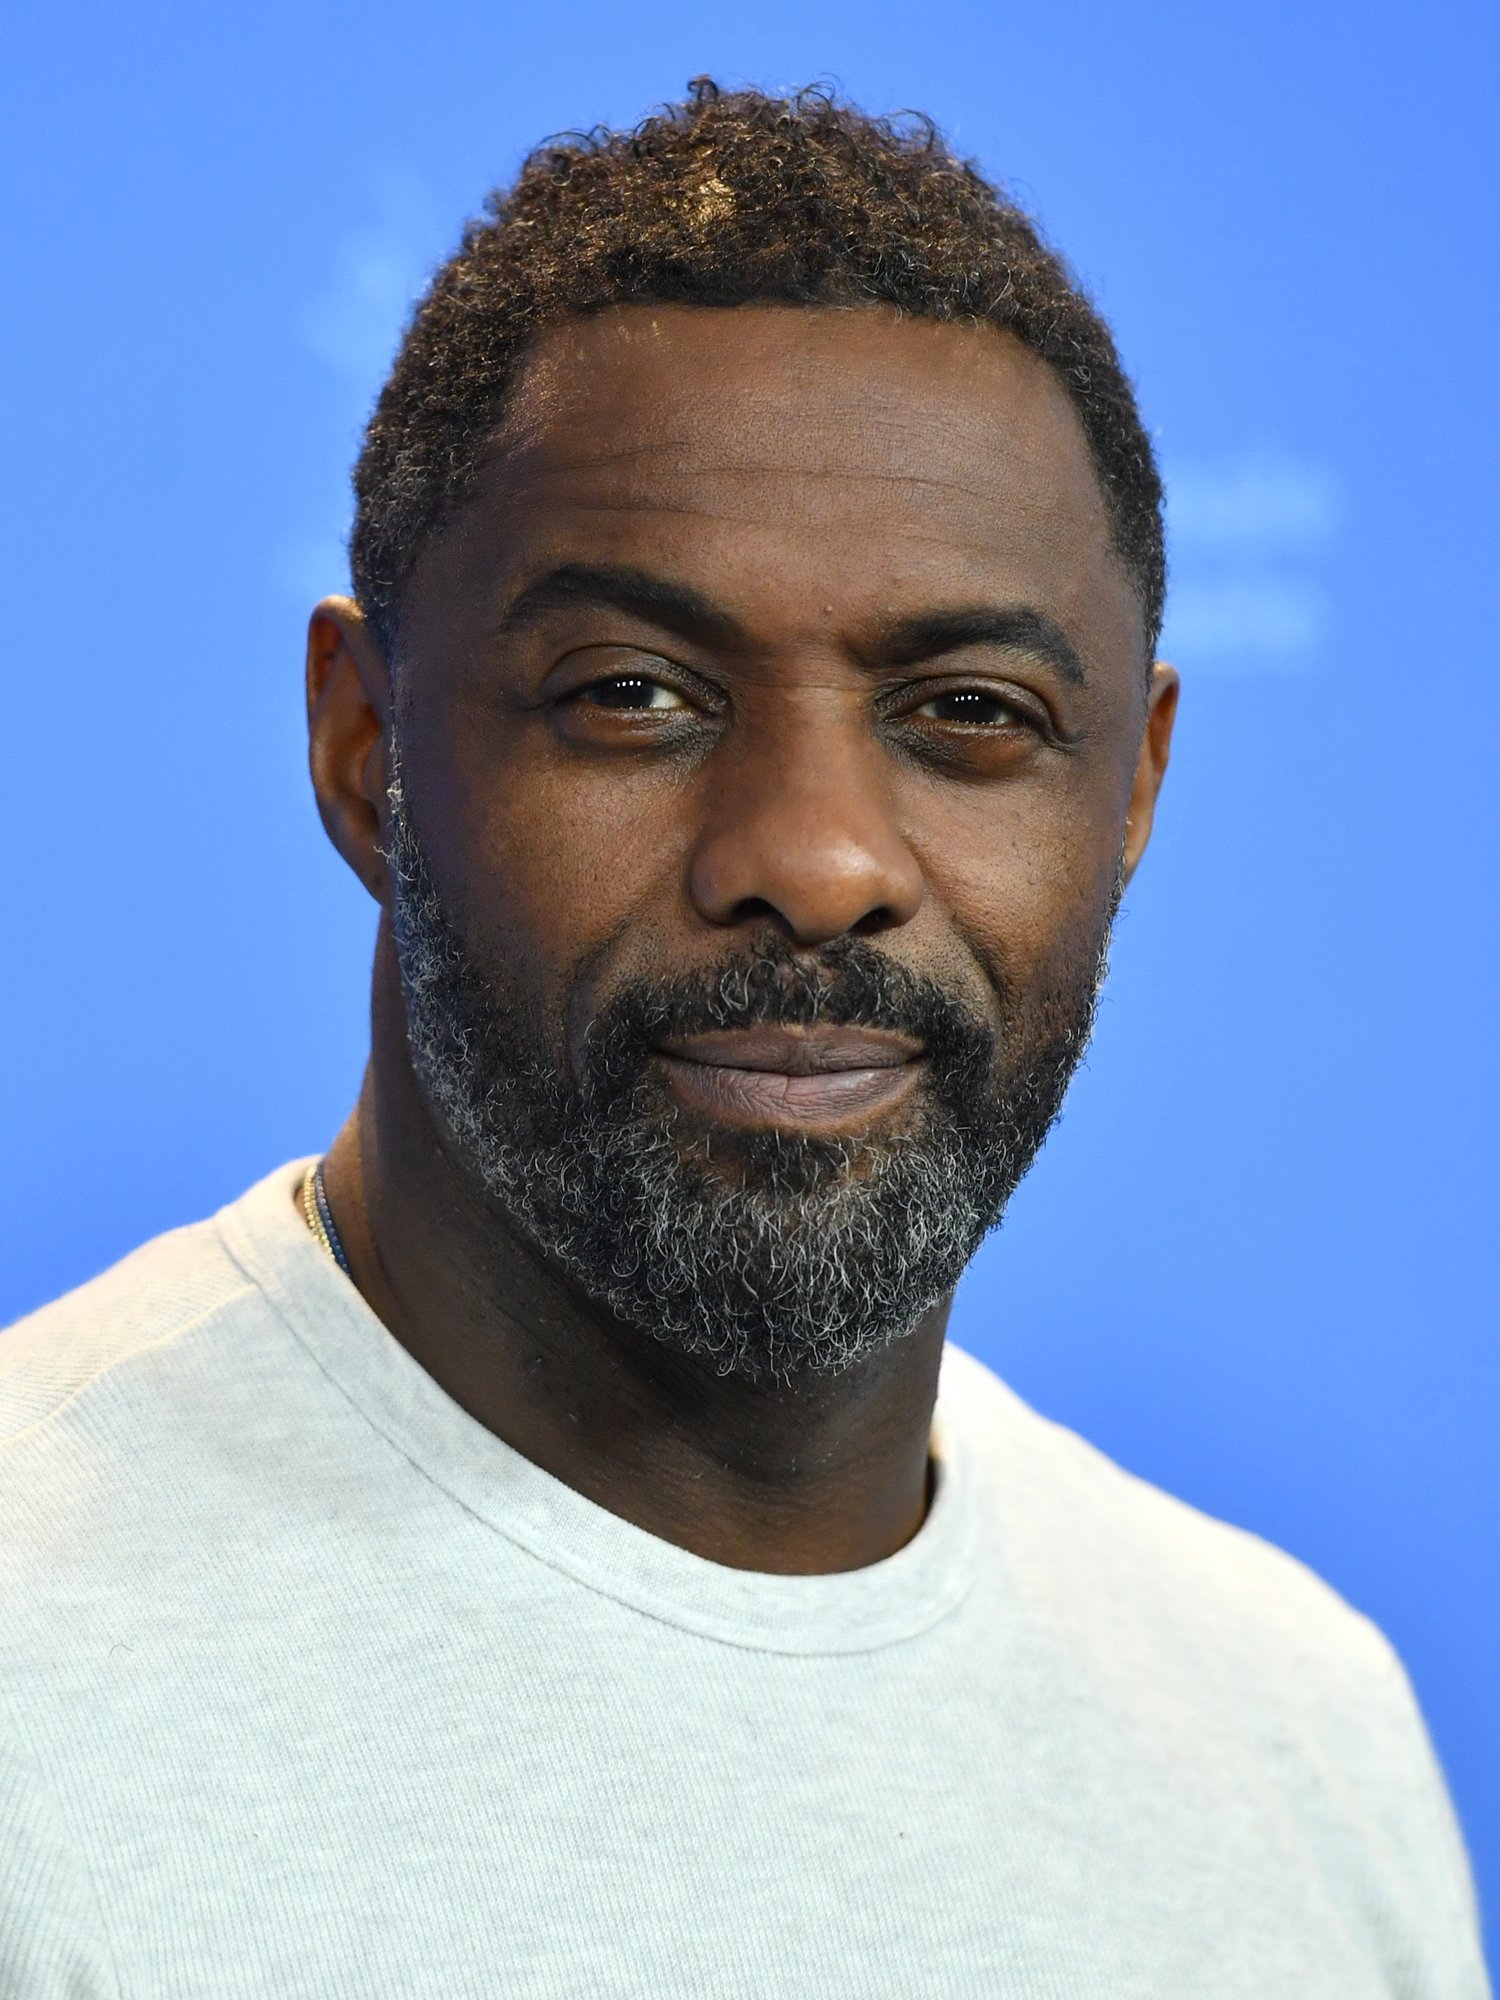 Ator Idris Elba, de Thor, pode substituir Daniel Craig em